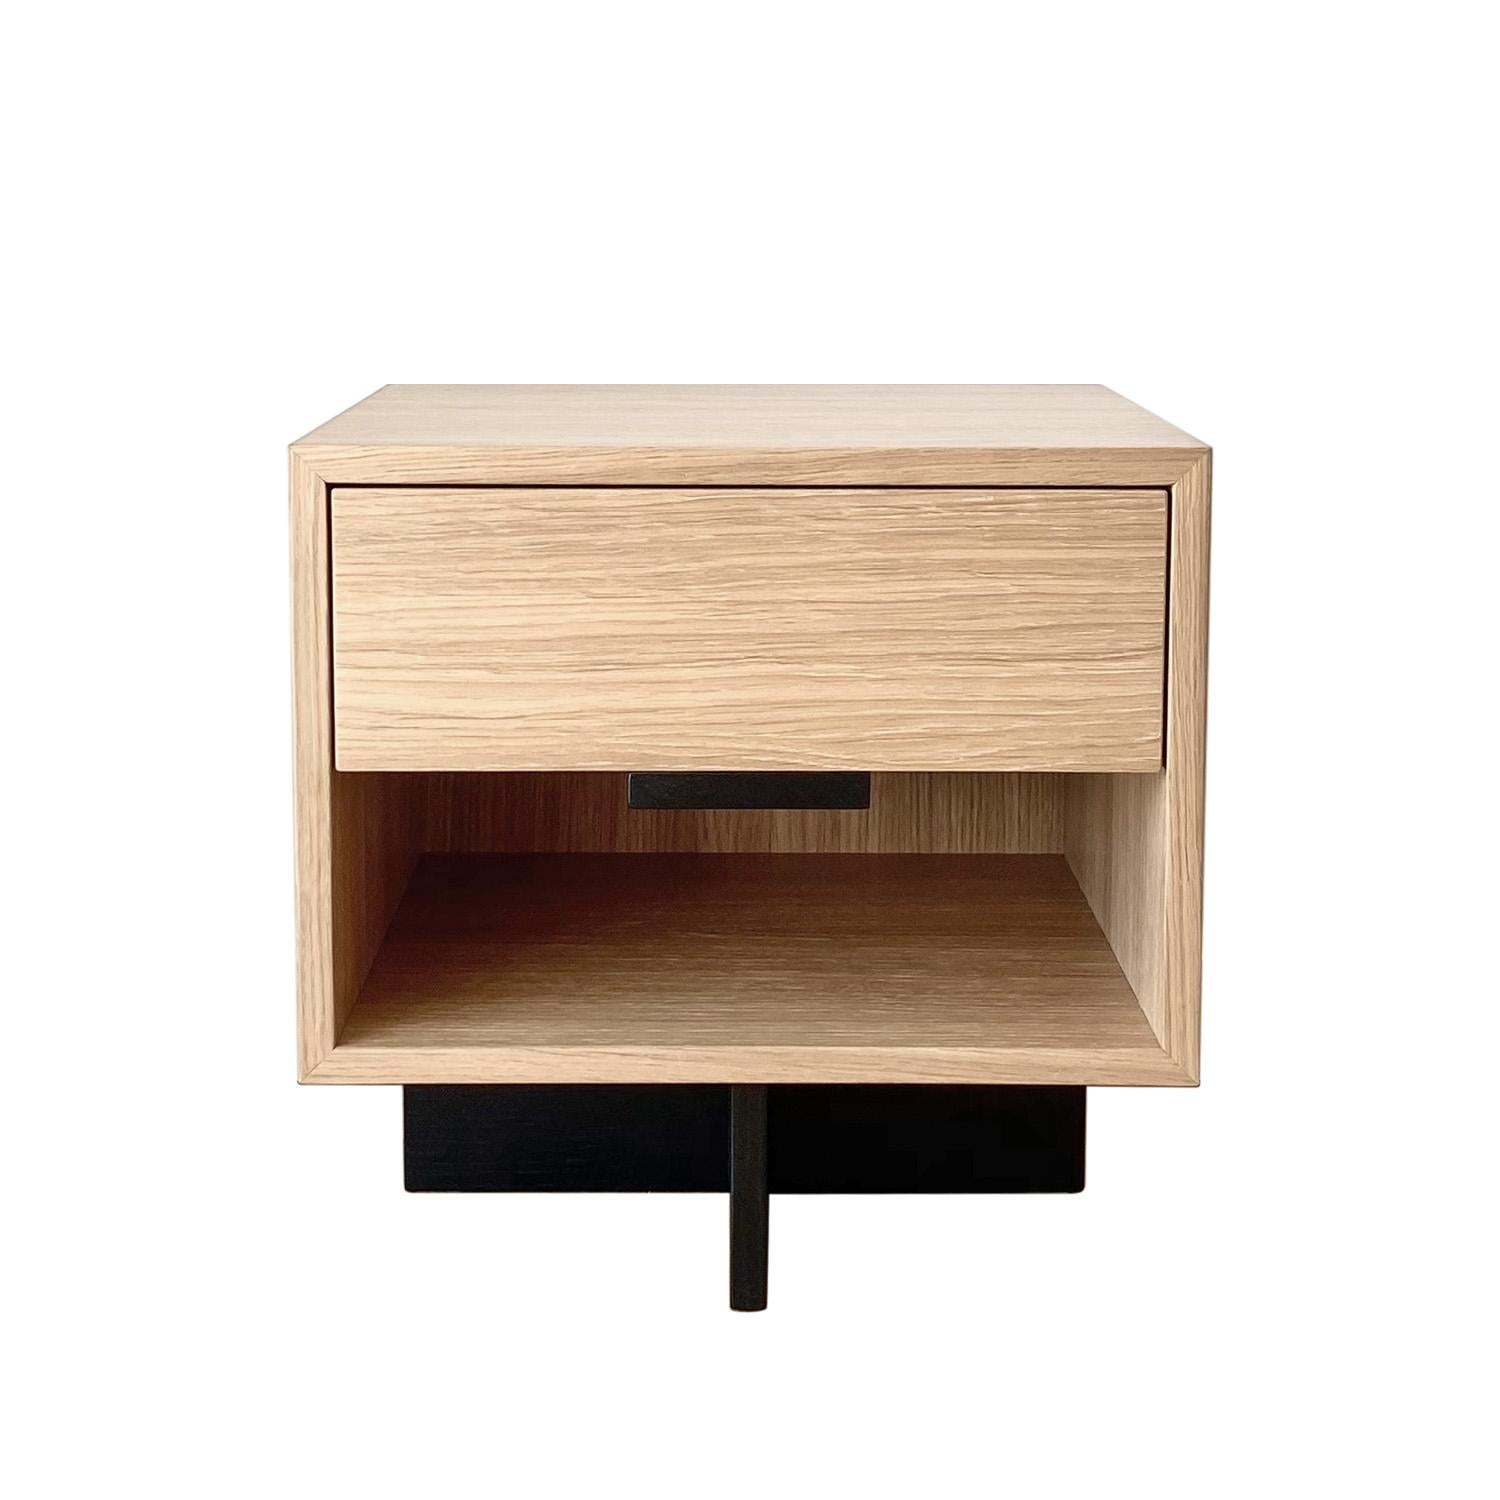 La table de nuit Kaid est un meuble fonctionnel et attrayant qui ajoutera une touche moderne et unique à votre espace de vie.

Le contraste entre l'élément de rangement massif et rectangulaire et le piédestal fin et linéaire donne une impression